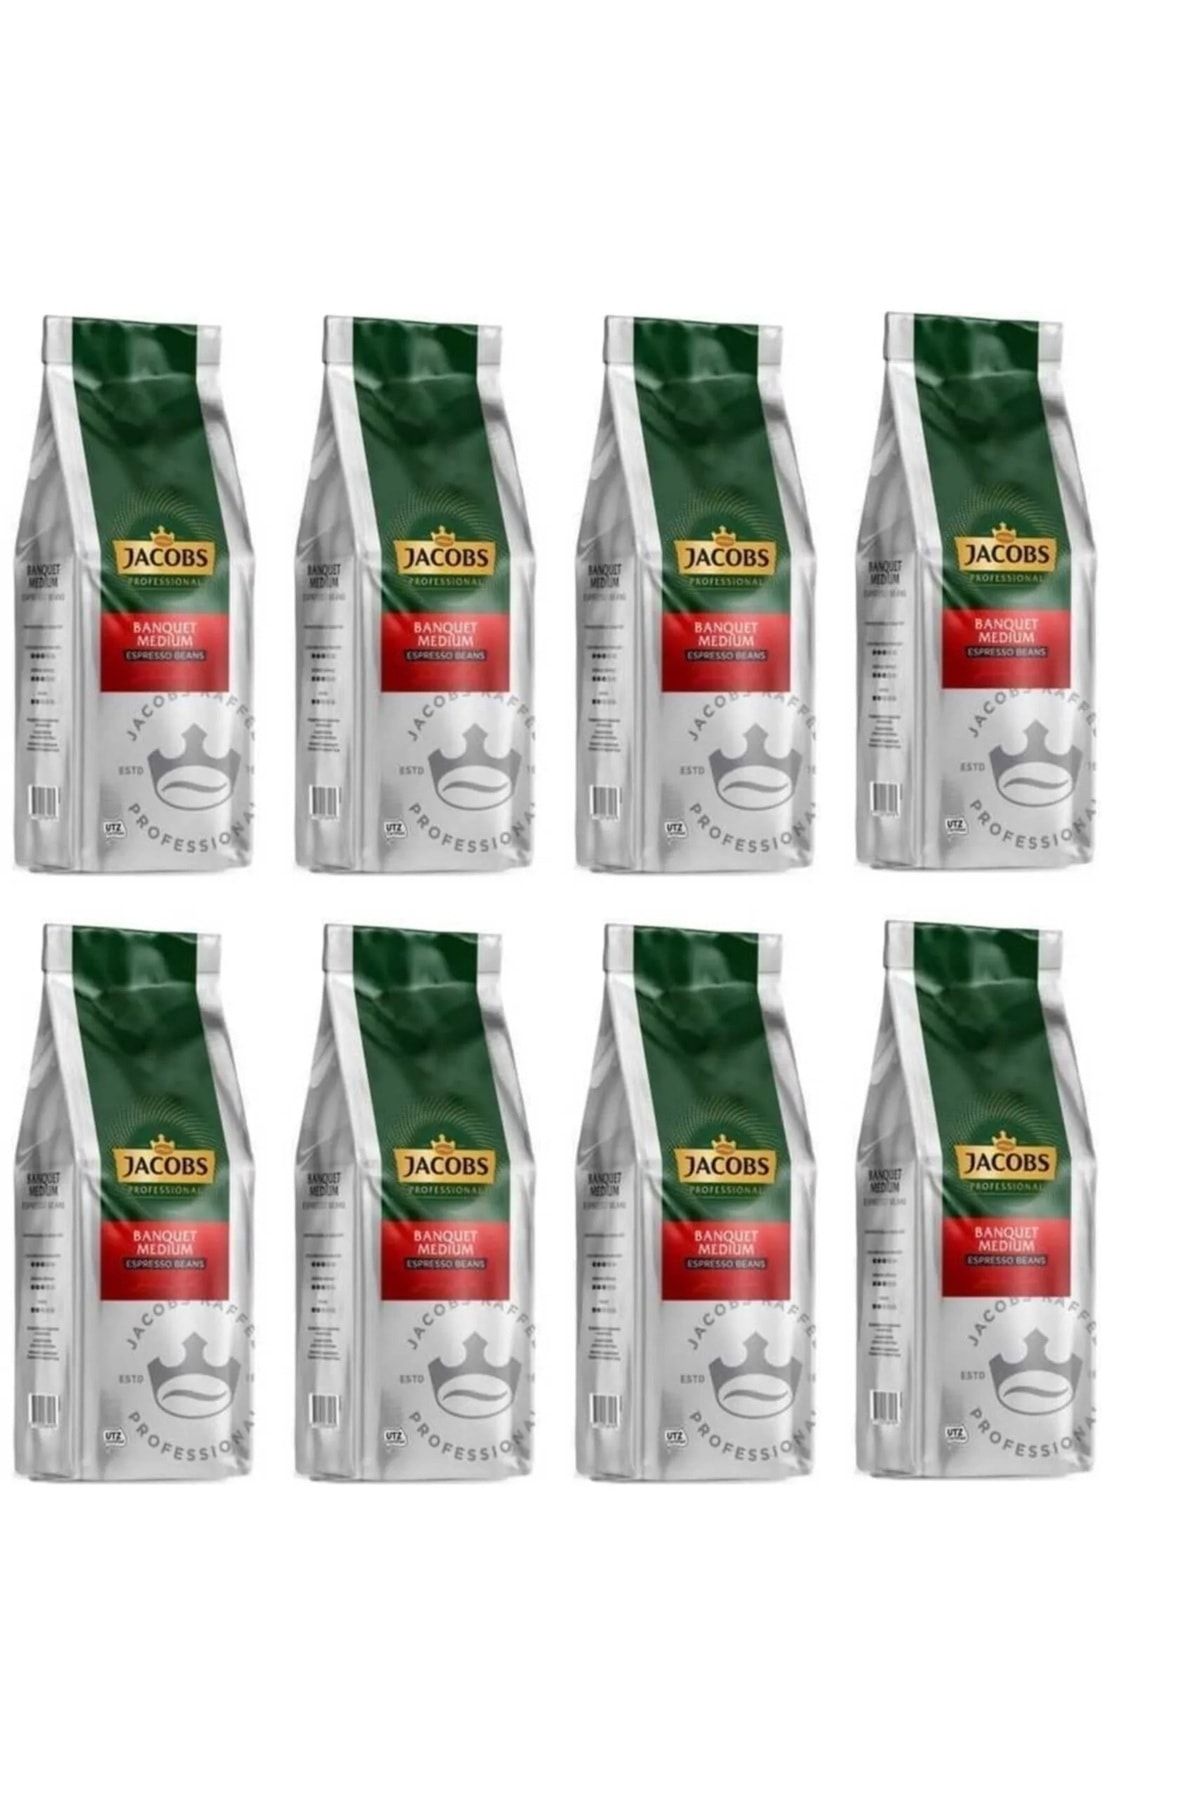 Jacobs Banquet Medium Espresso Beans Çekirdek Kahve 1000 gr X 8 Paket